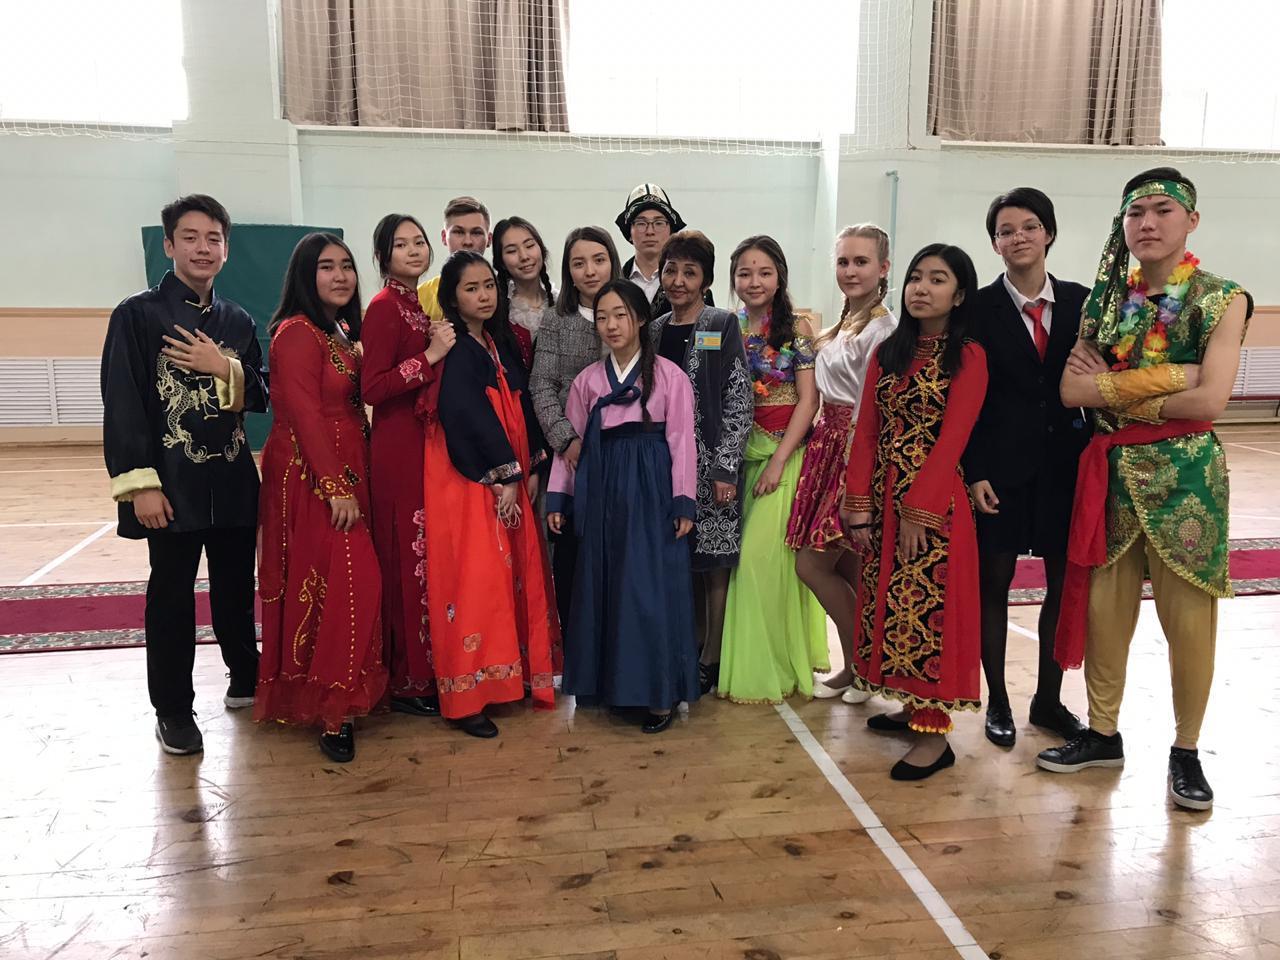 День единства народа Казахстана